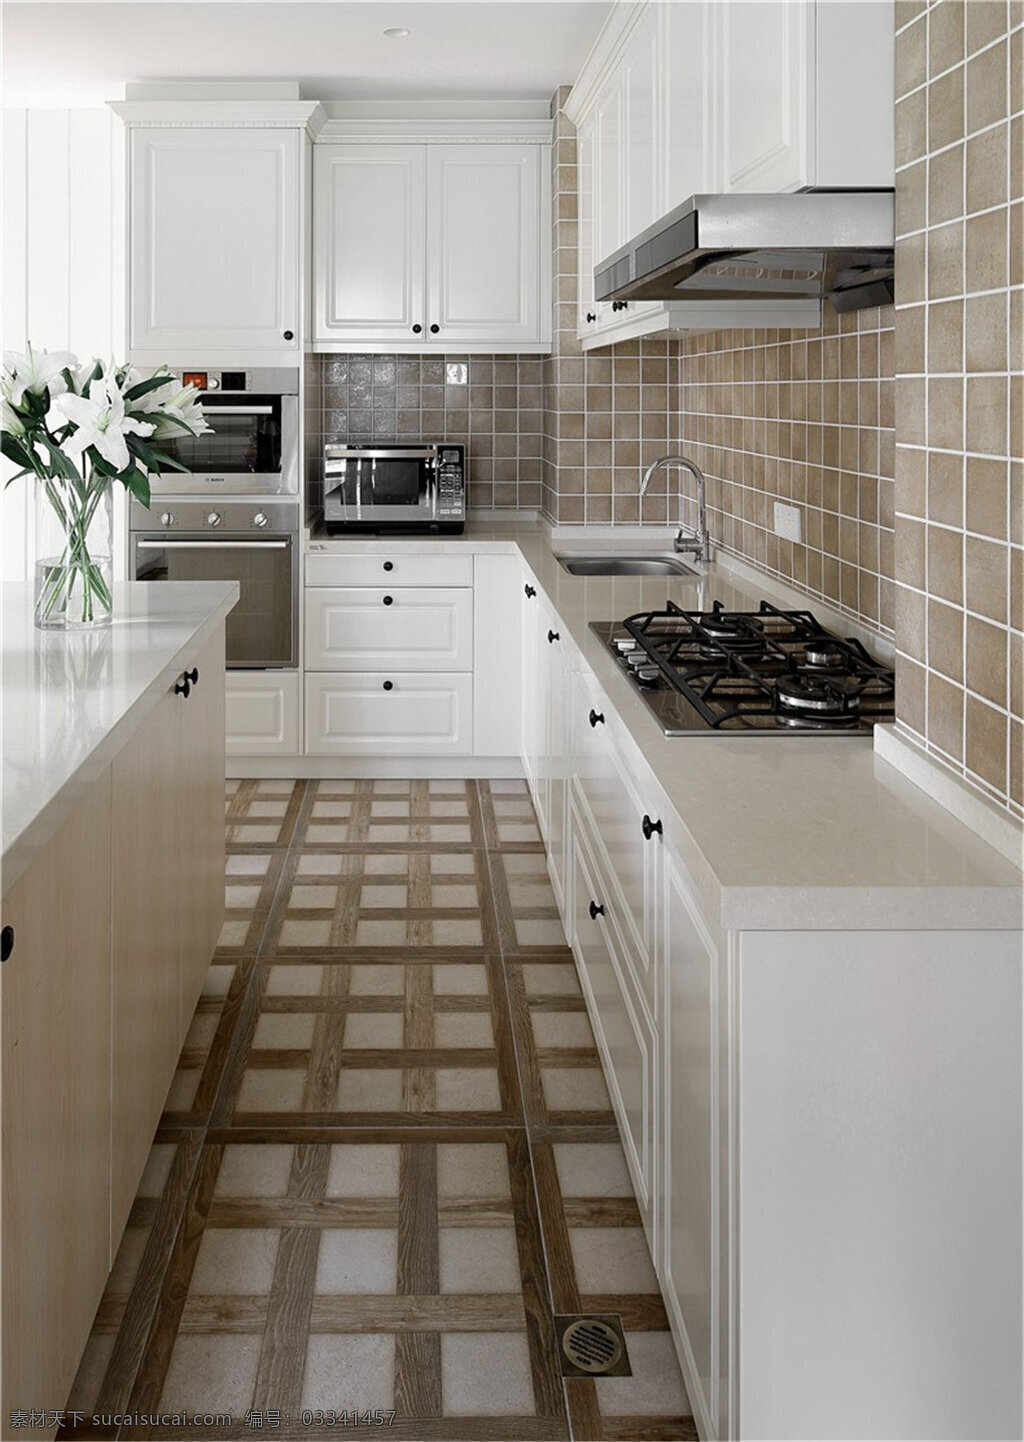 美式 简约 厨房 设计图 家居 家居生活 室内设计 装修 室内 家具 装修设计 环境设计 瓷砖 橱柜